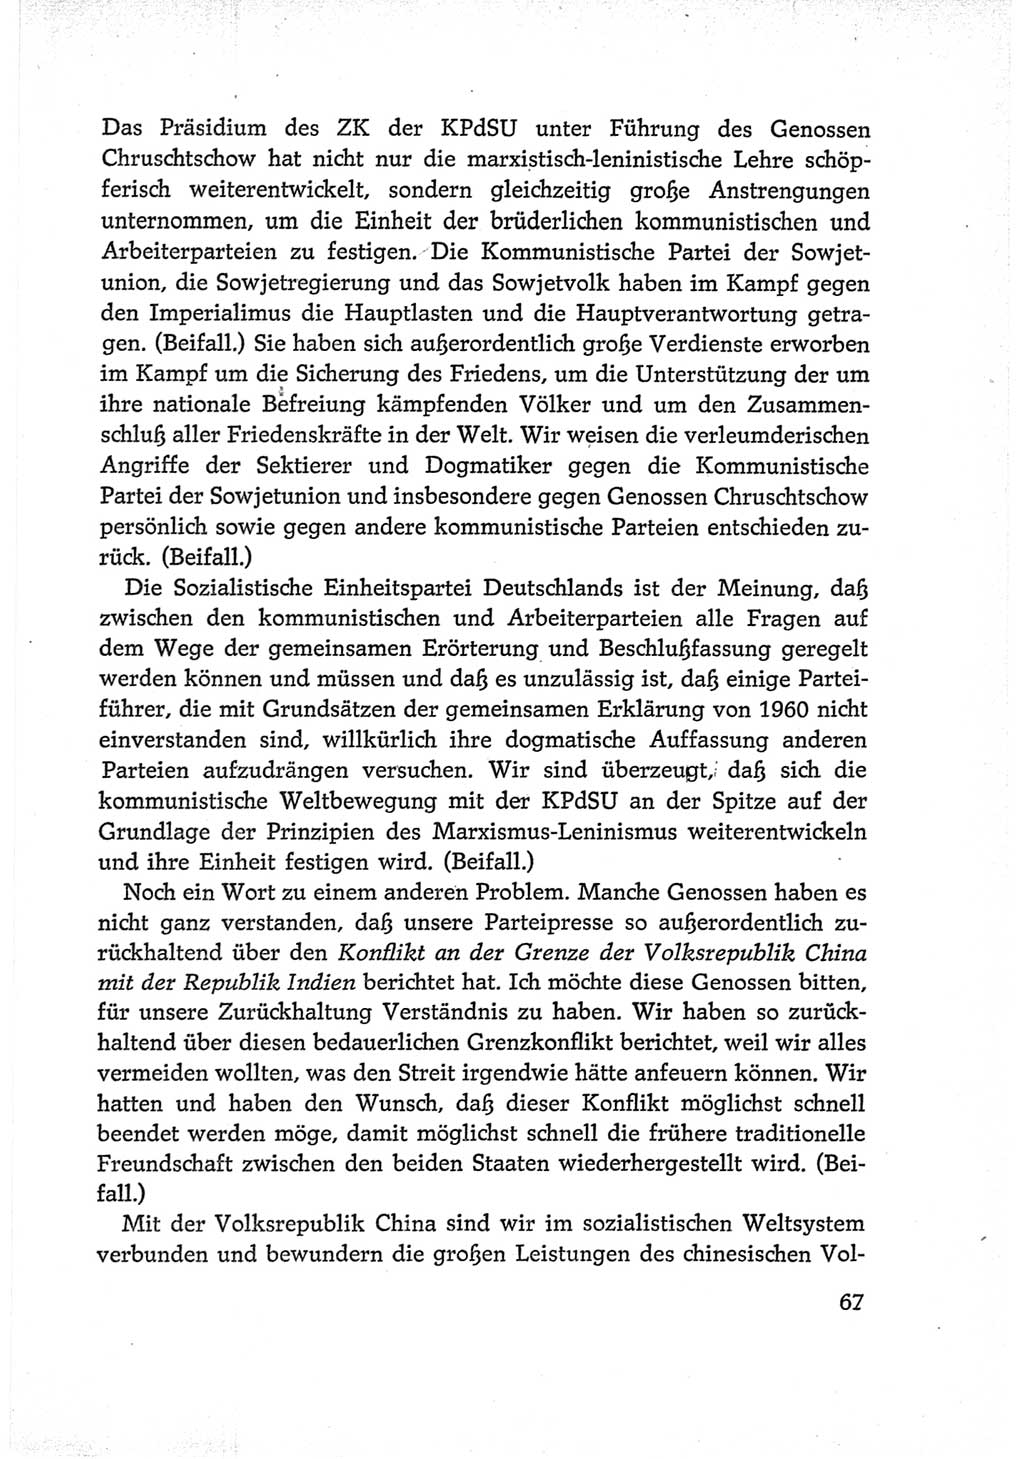 Protokoll der Verhandlungen des Ⅵ. Parteitages der Sozialistischen Einheitspartei Deutschlands (SED) [Deutsche Demokratische Republik (DDR)] 1963, Band Ⅰ, Seite 67 (Prot. Verh. Ⅵ. PT SED DDR 1963, Bd. Ⅰ, S. 67)